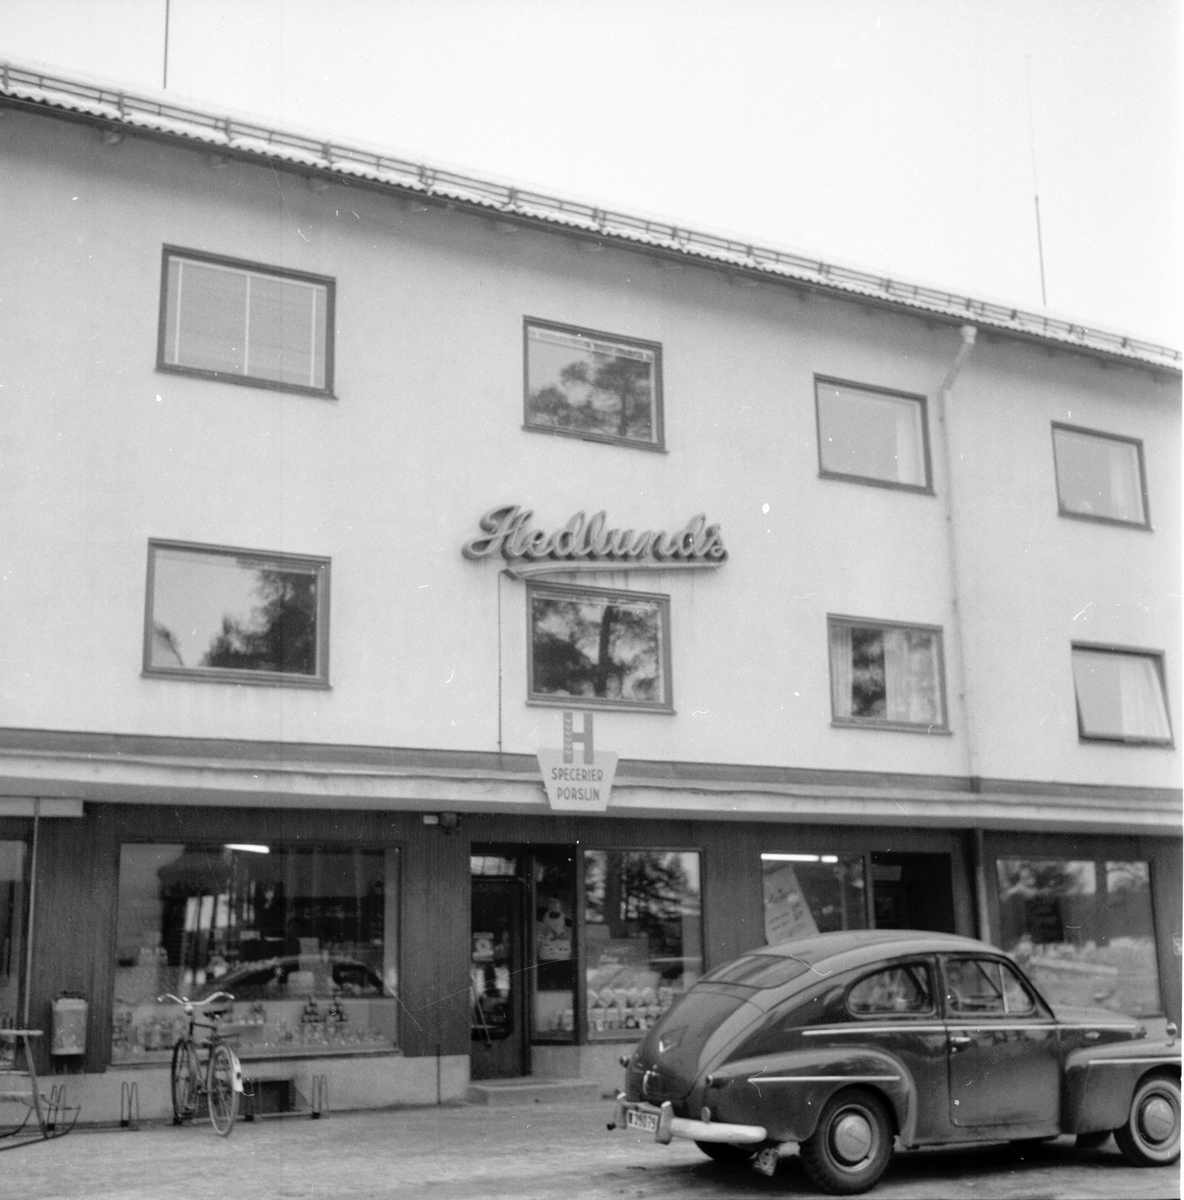 Furudal, affärsbyggnad med Volvo PV444.
Orenappet gör upp,
22 Febr. 1959